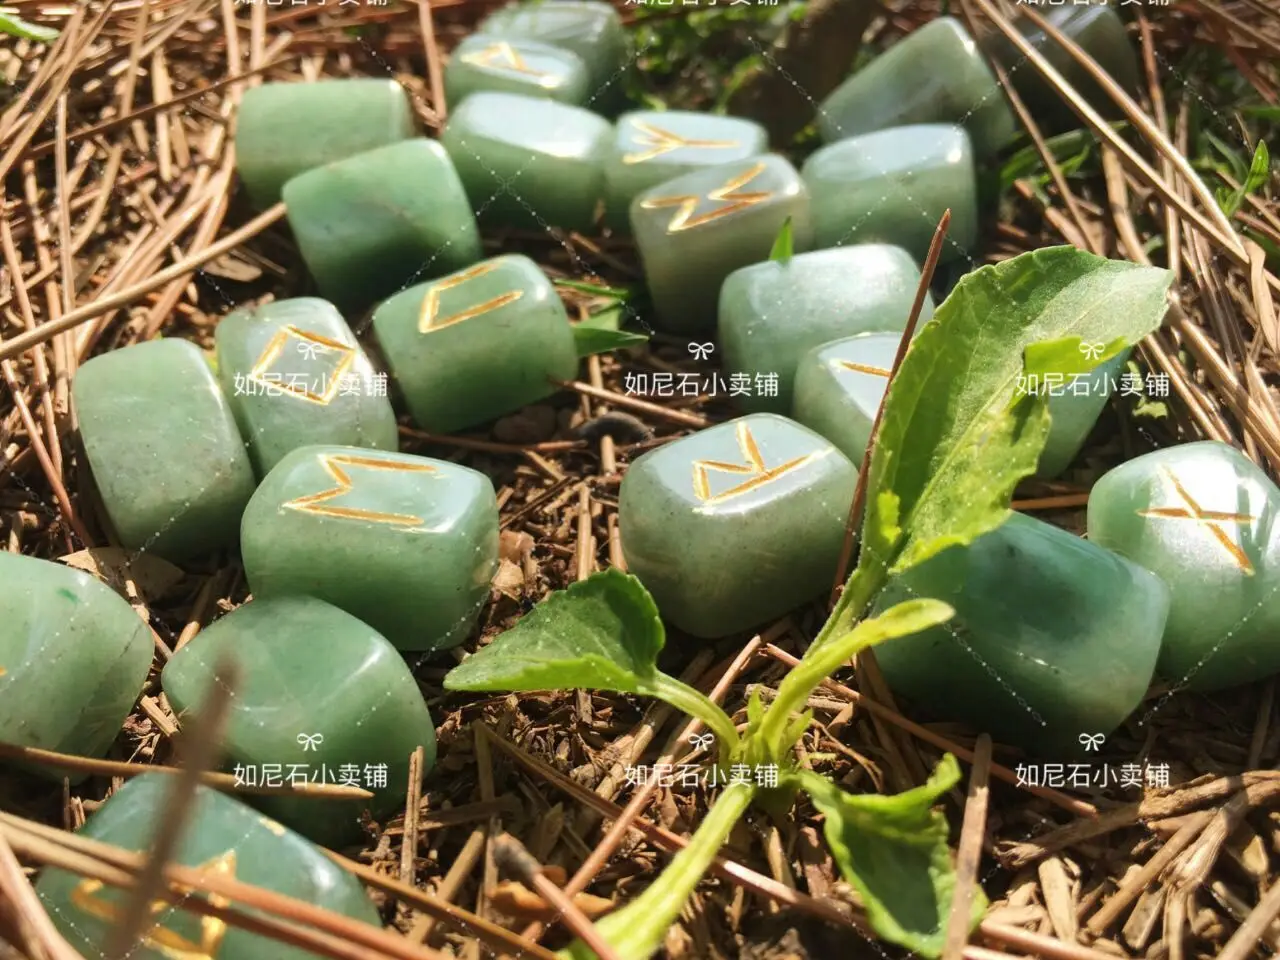 25 шт./компл. гравированные зеленые кристаллы викинга руны набор камней резные надпись Руна камни настольная игра divination инструмент амулет знак